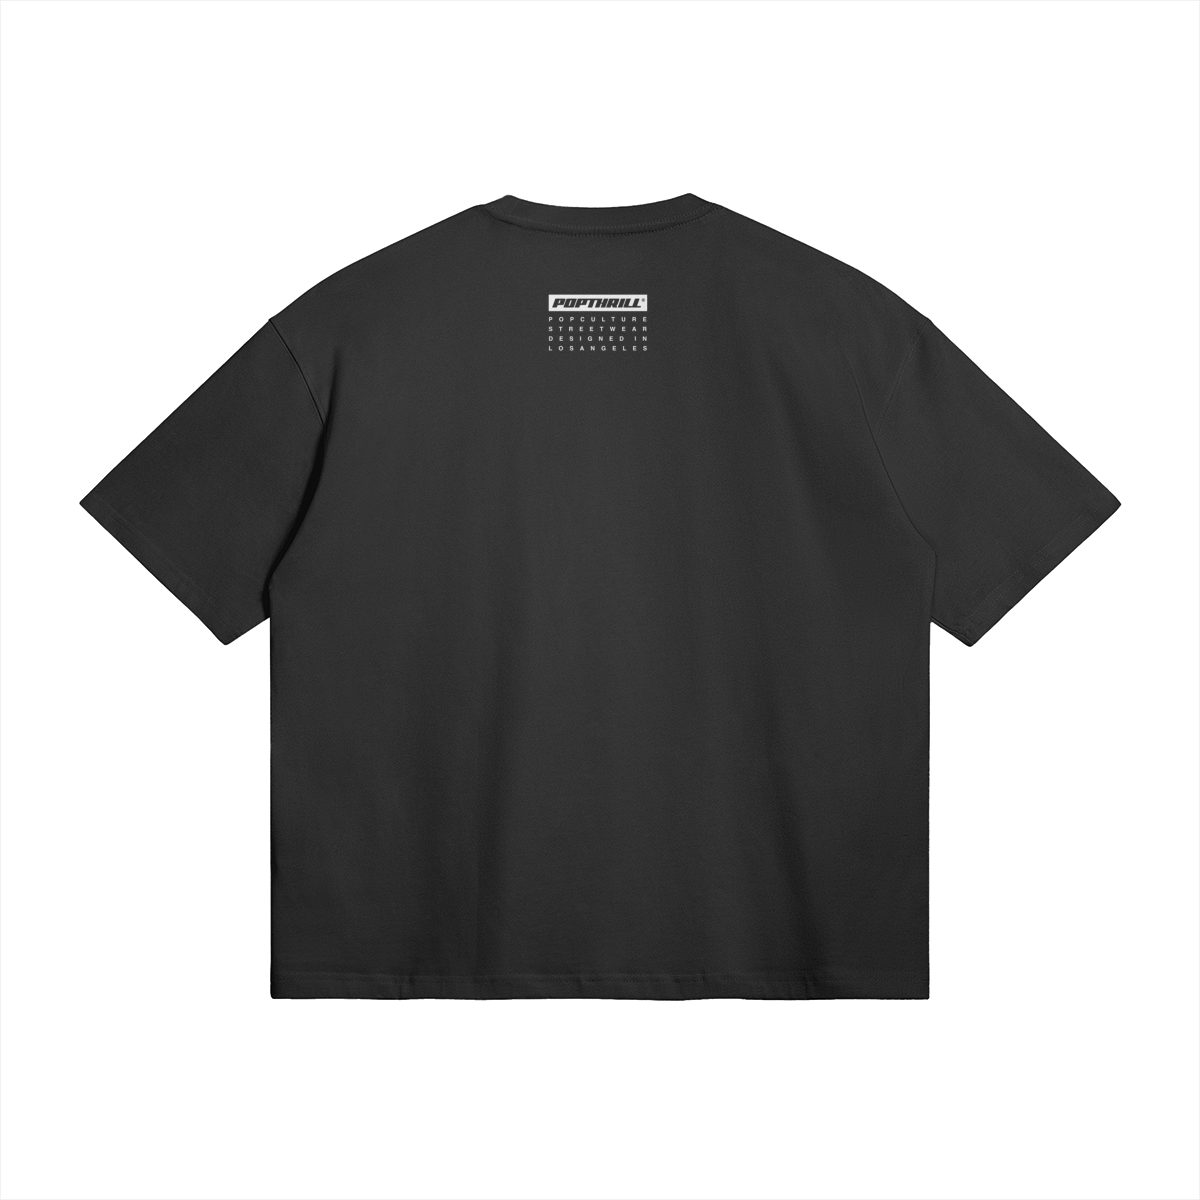 Black oversized boxy tee anime shirt